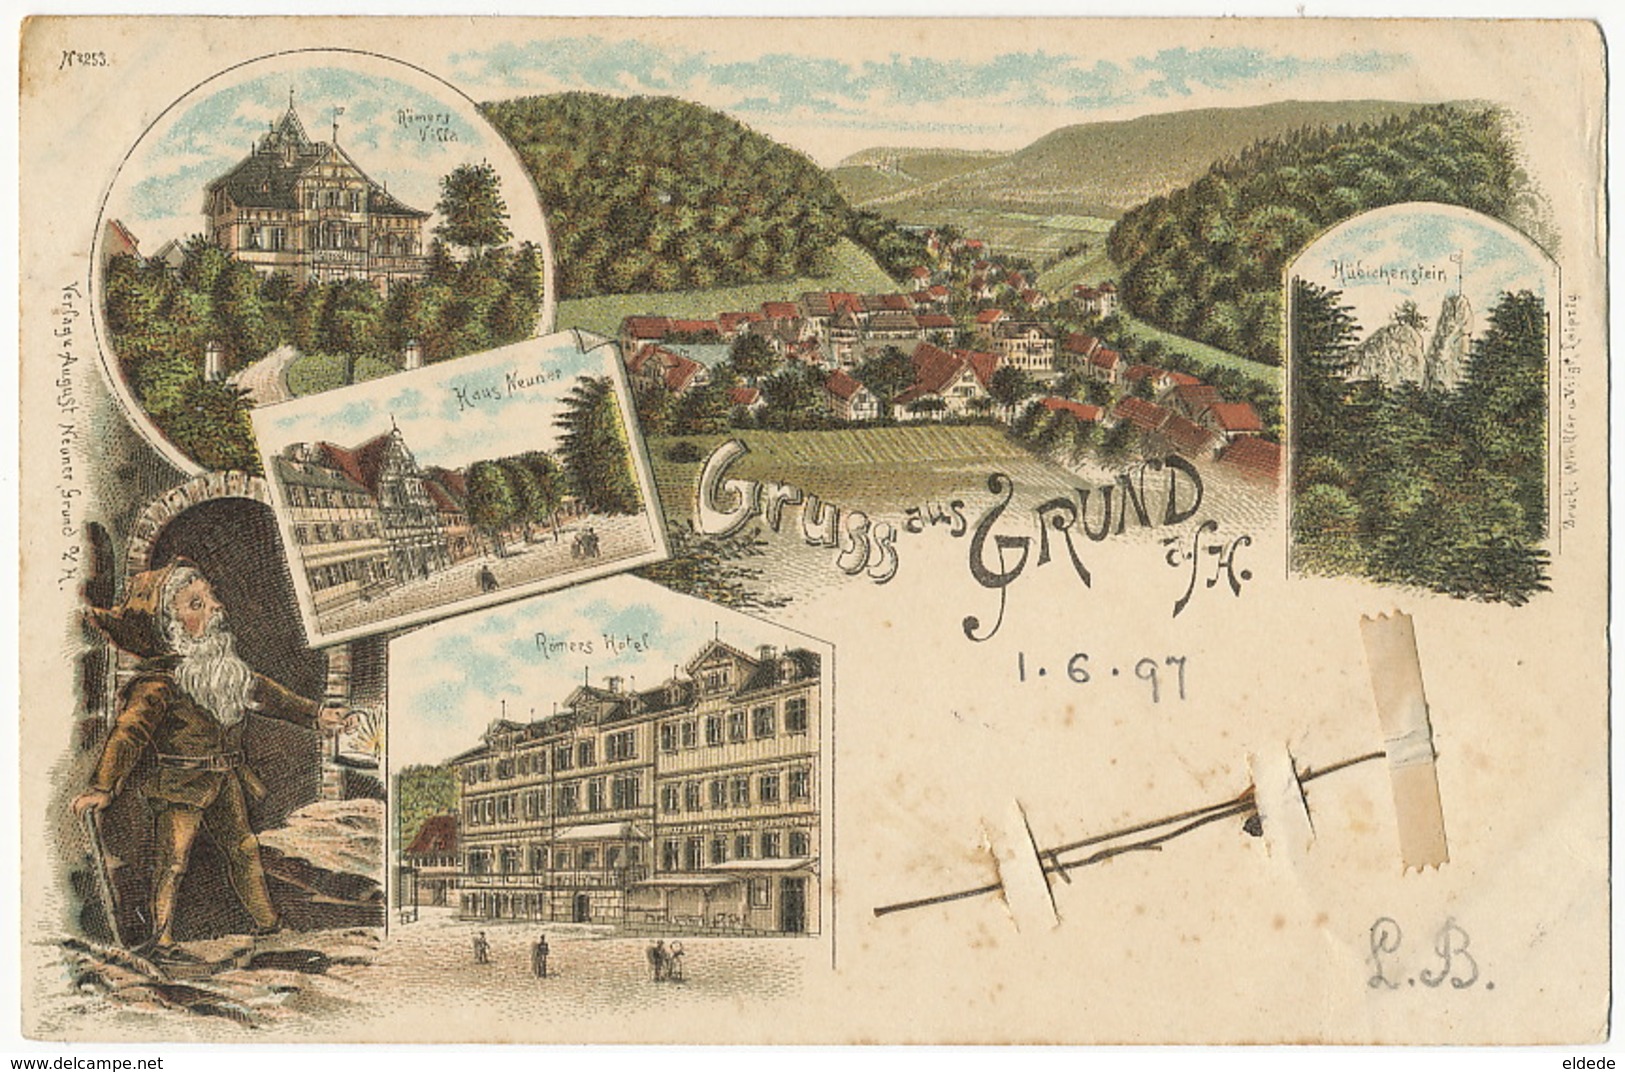 Gruss Aus Grund A. H. P. Used Wildemann 1897  Litho August Neuner Lutin Elf Romers Hotel To Geisenheim - Wildemann